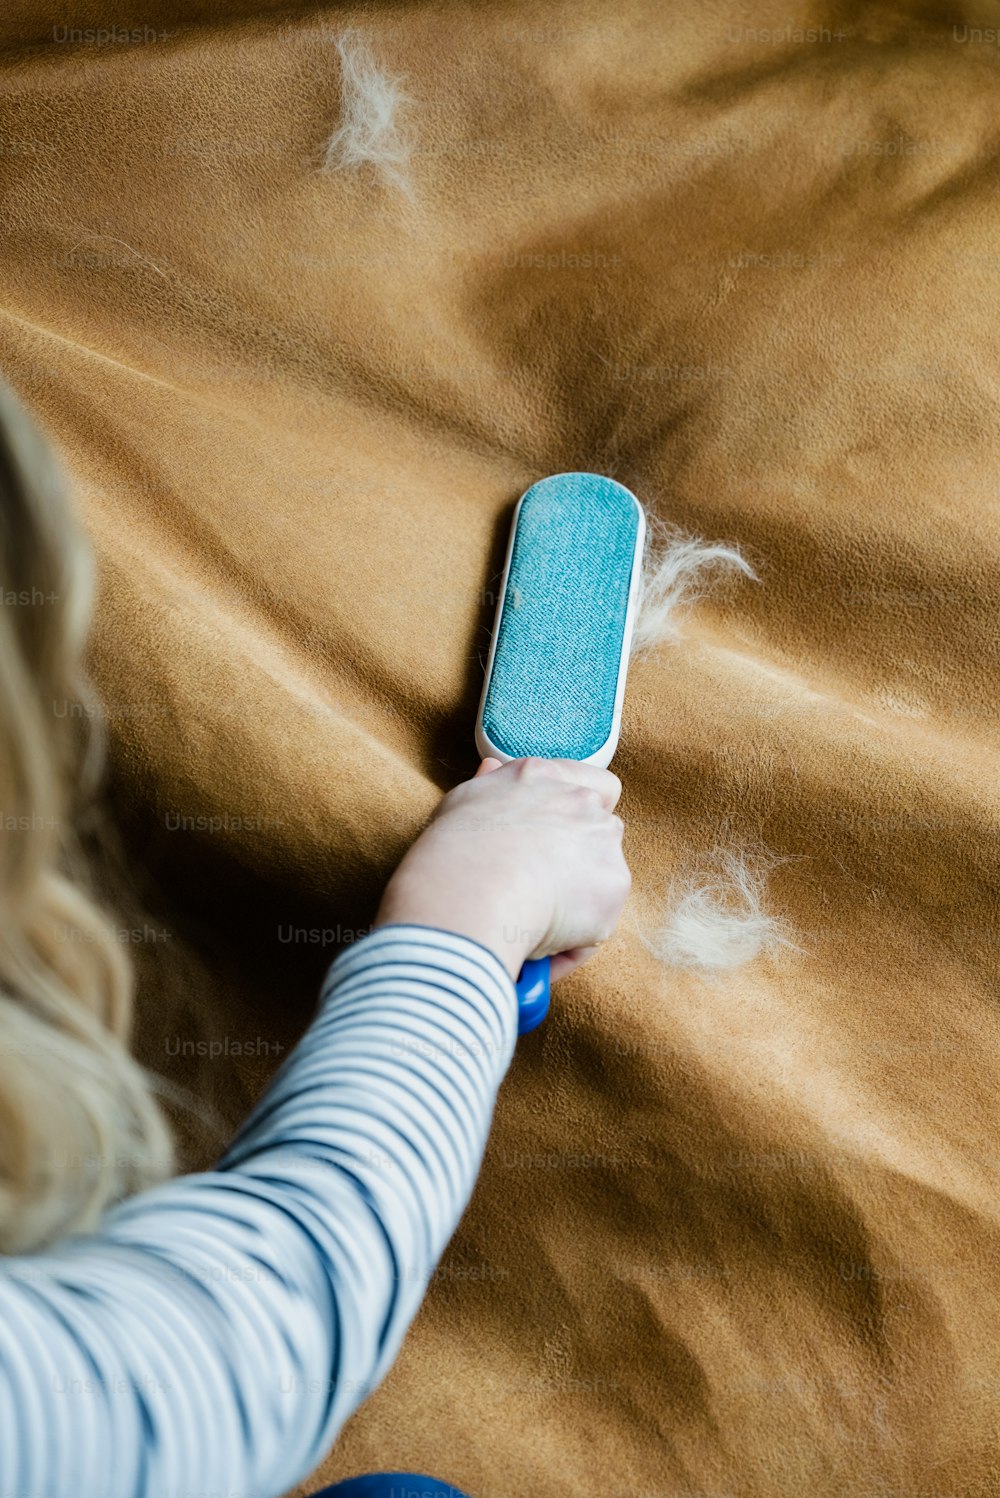 Eine Frau liegt auf einem Bett und hält ein Handy in der Hand